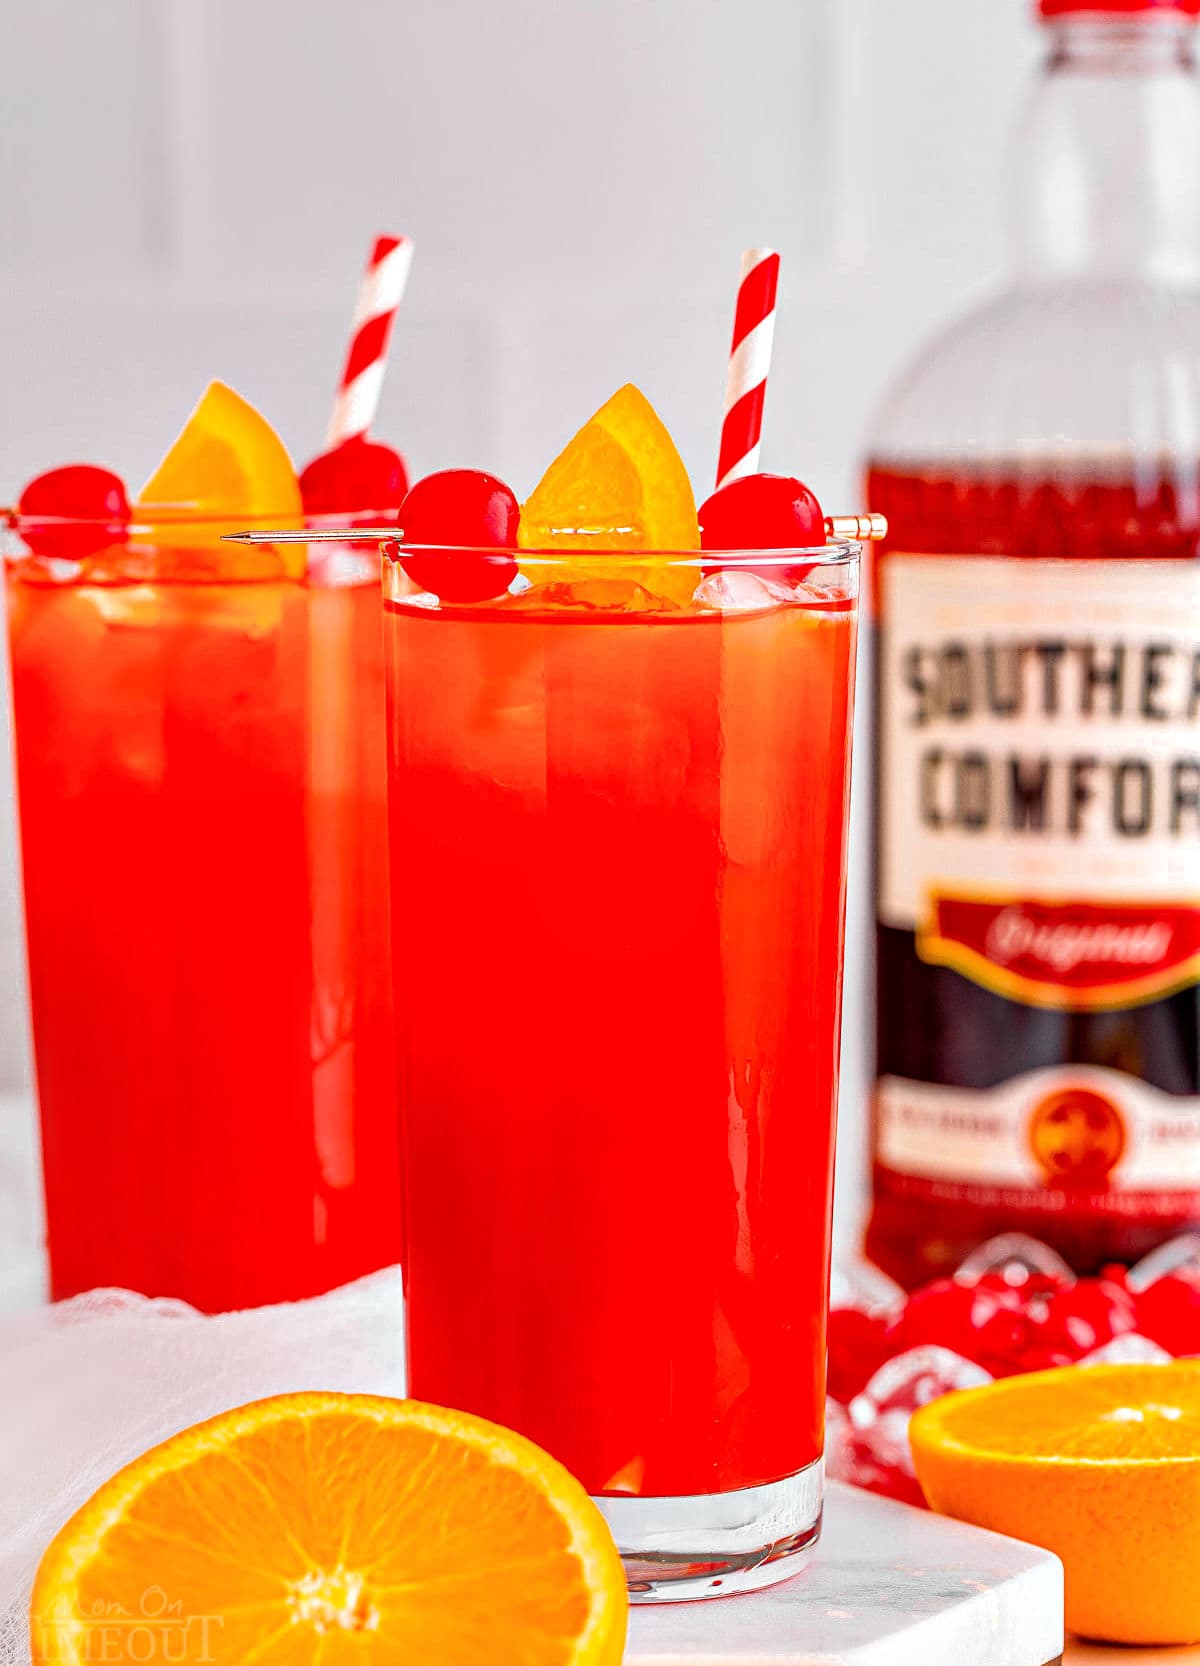 due bicchieri alti pieni di ricetta slammer dell'alabama con cannucce a righe bianche e rosse.  una bottiglia di Southern Comfort sullo sfondo e un'arancia tagliata a metà.